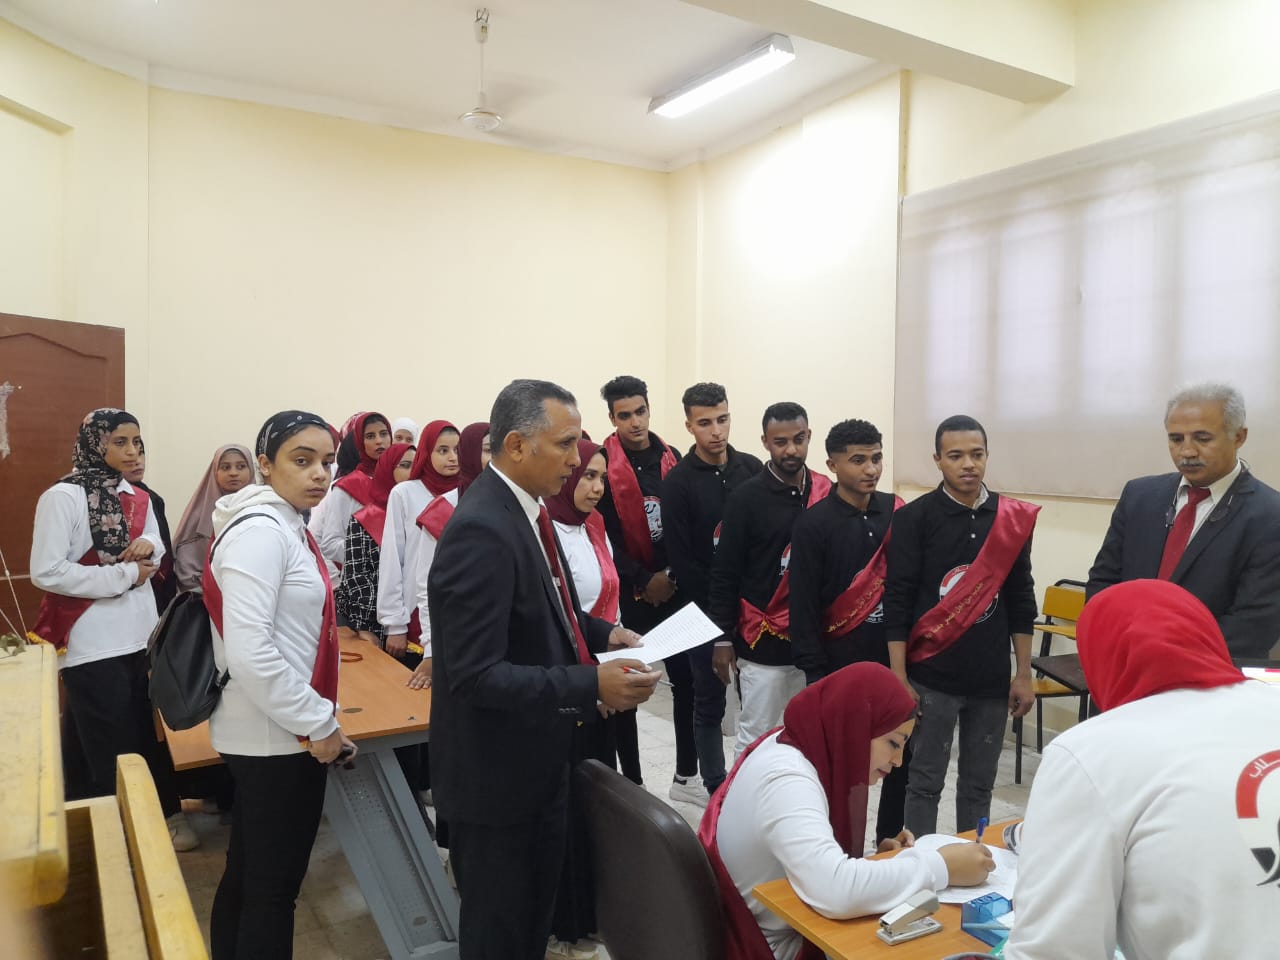 أسرة طلاب من أجل مصر بجامعة الأقصر تستعد لخوض الانتخابات الطلابية